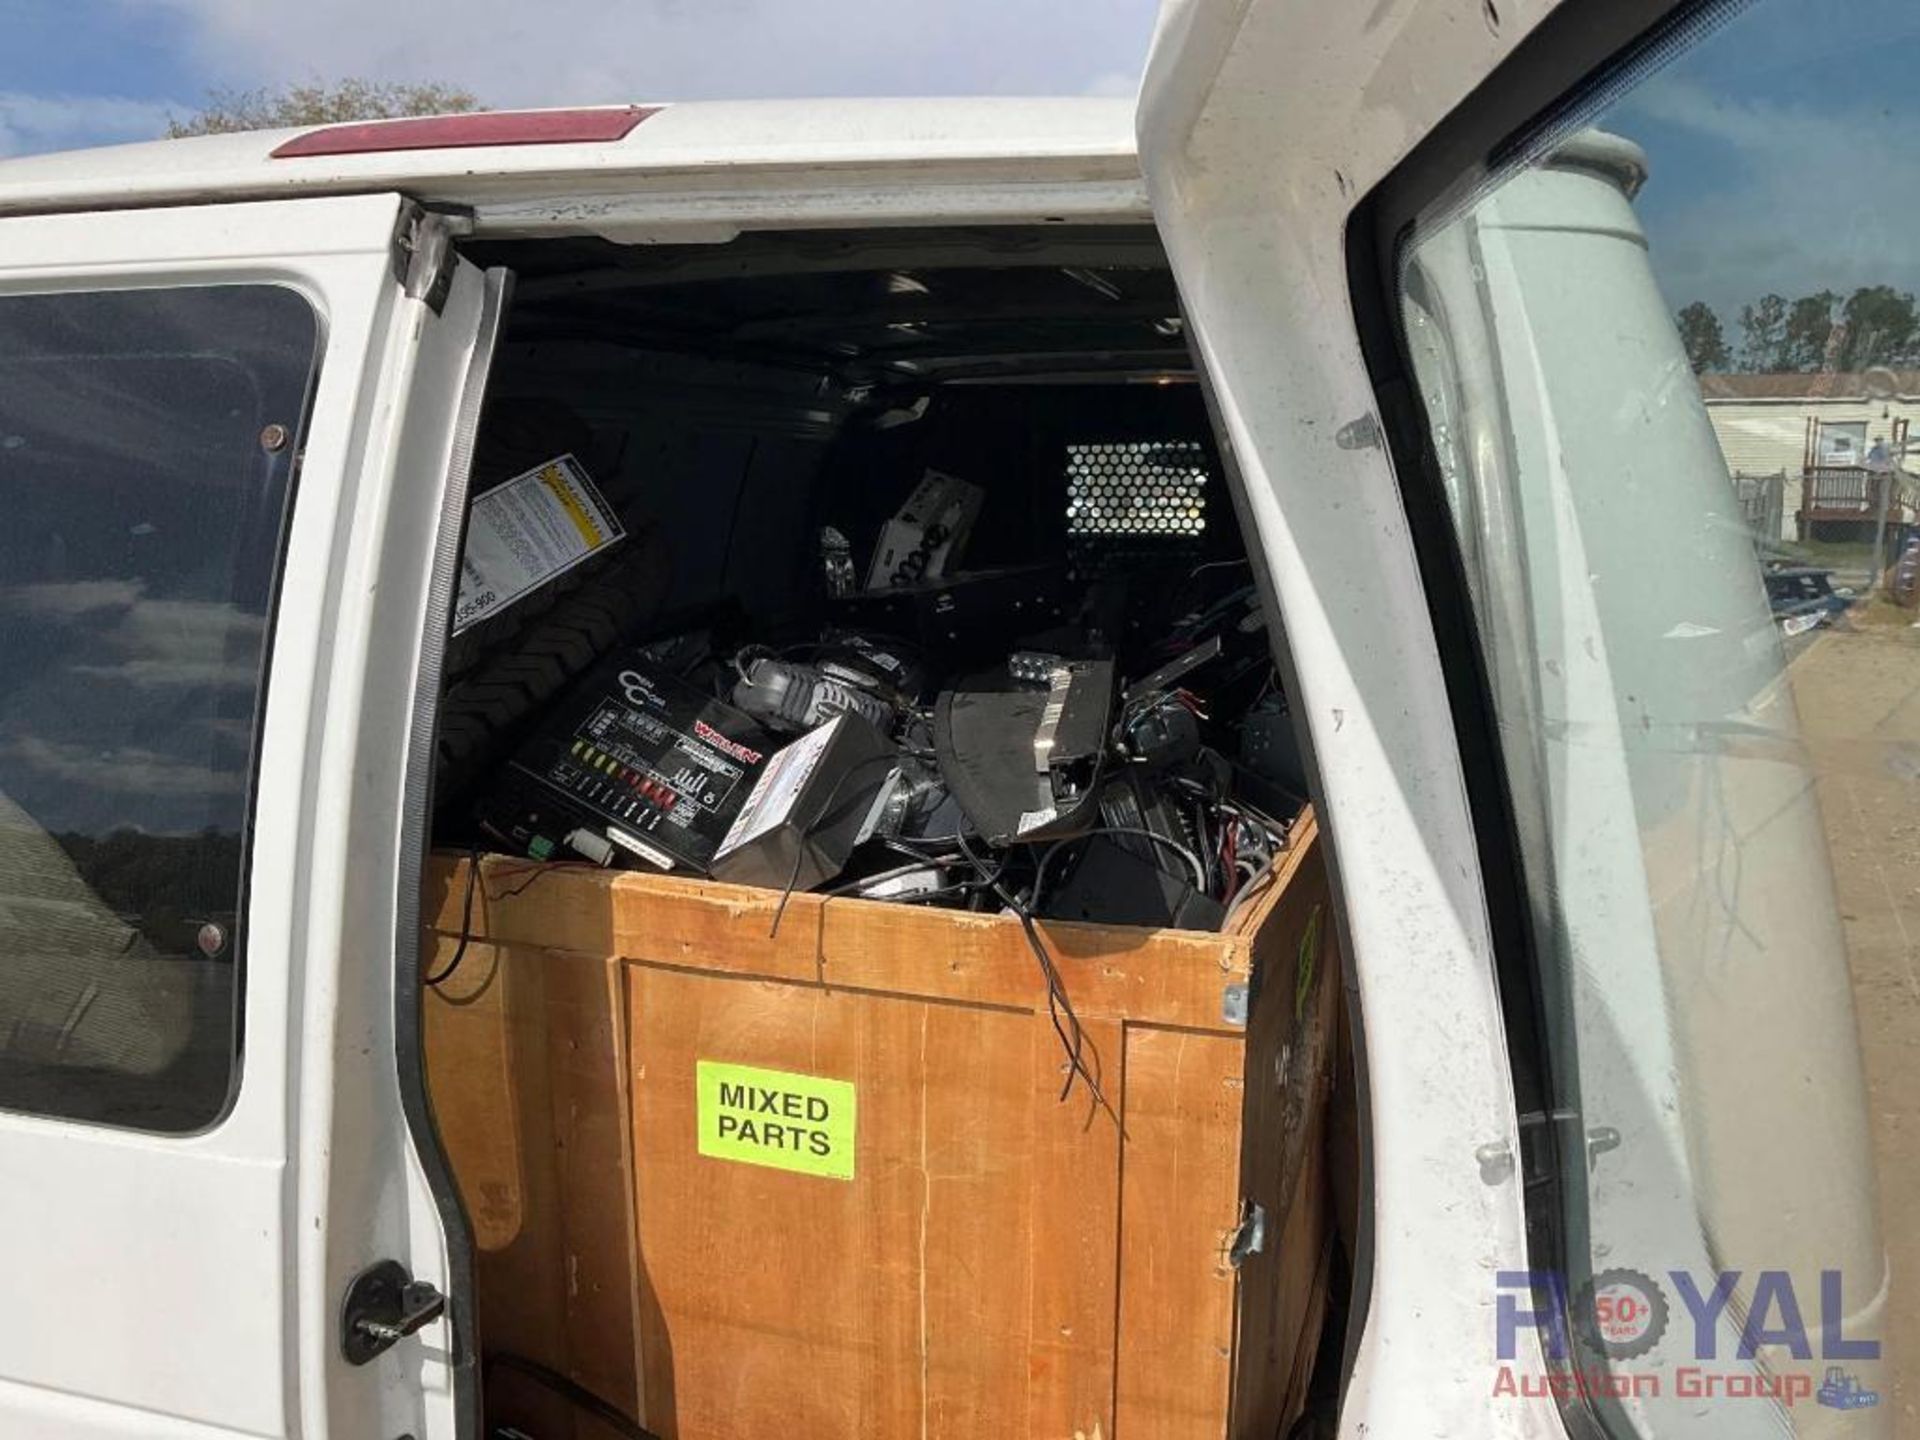 2012 Ford Econoline Cargo Van - Image 14 of 28